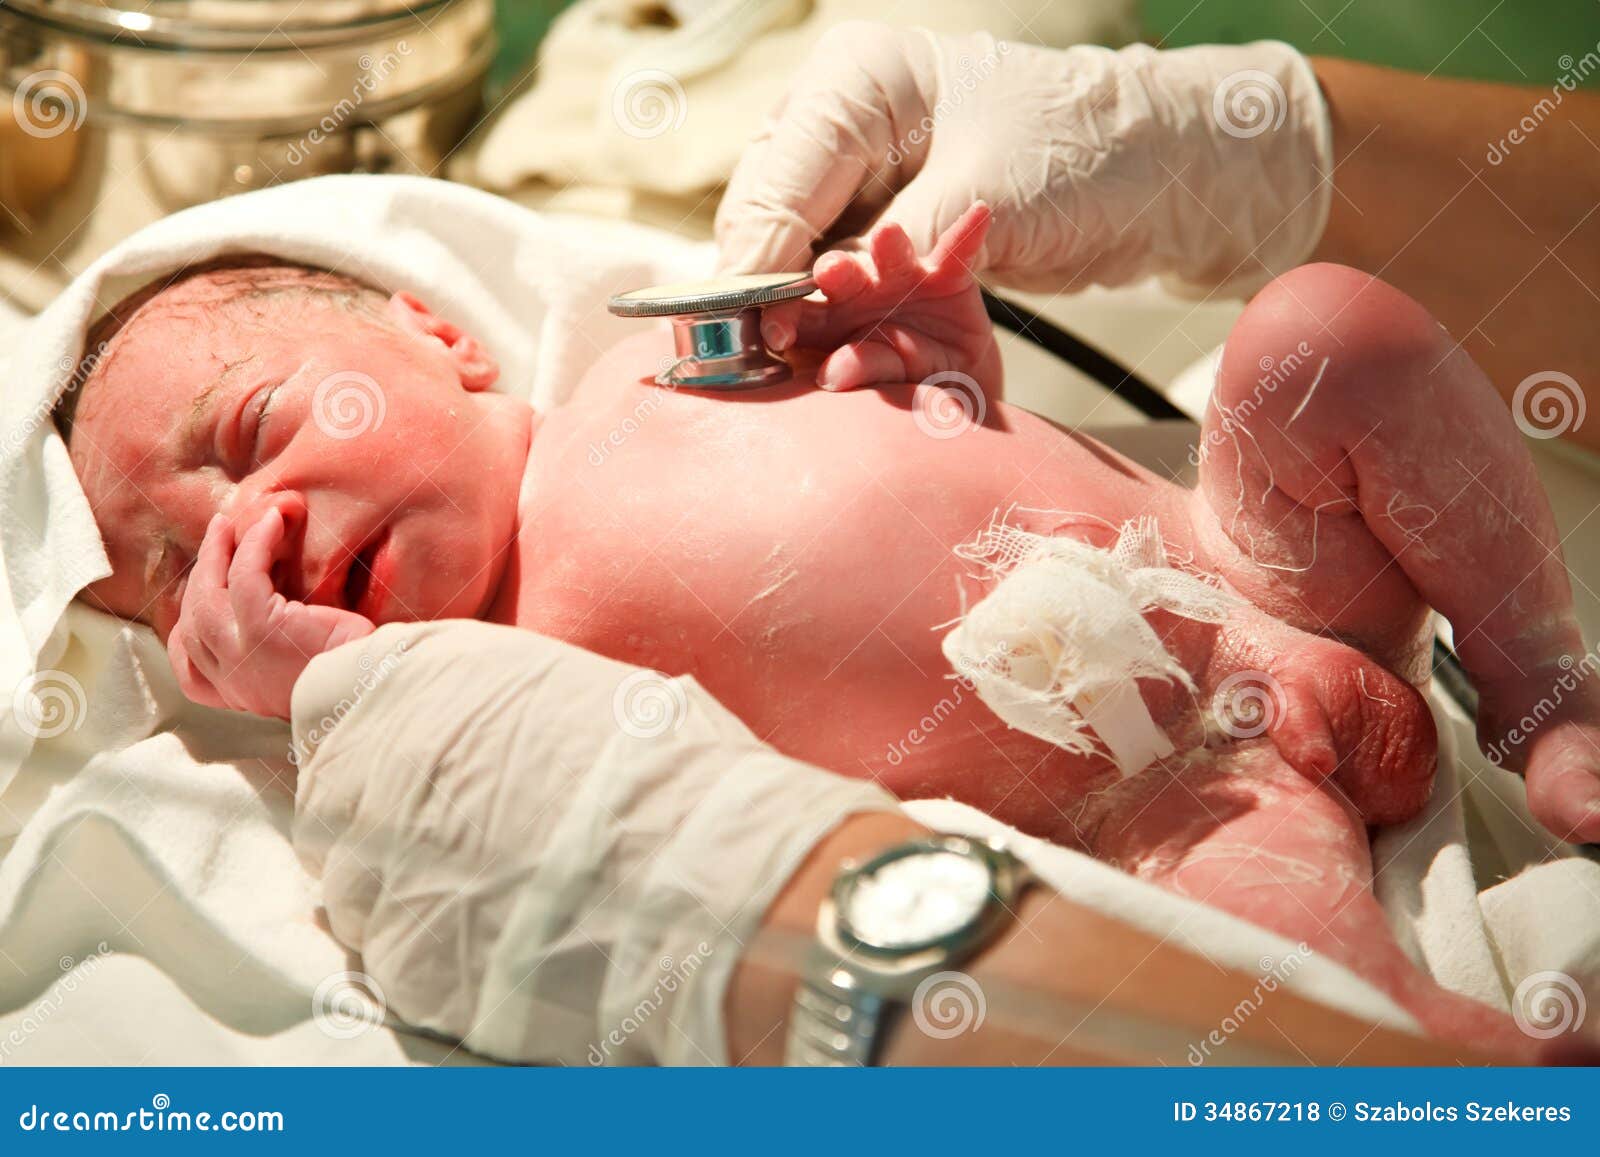 4,356 New Born Baby Hospital Stock Photos - Free & Royalty-Free ...